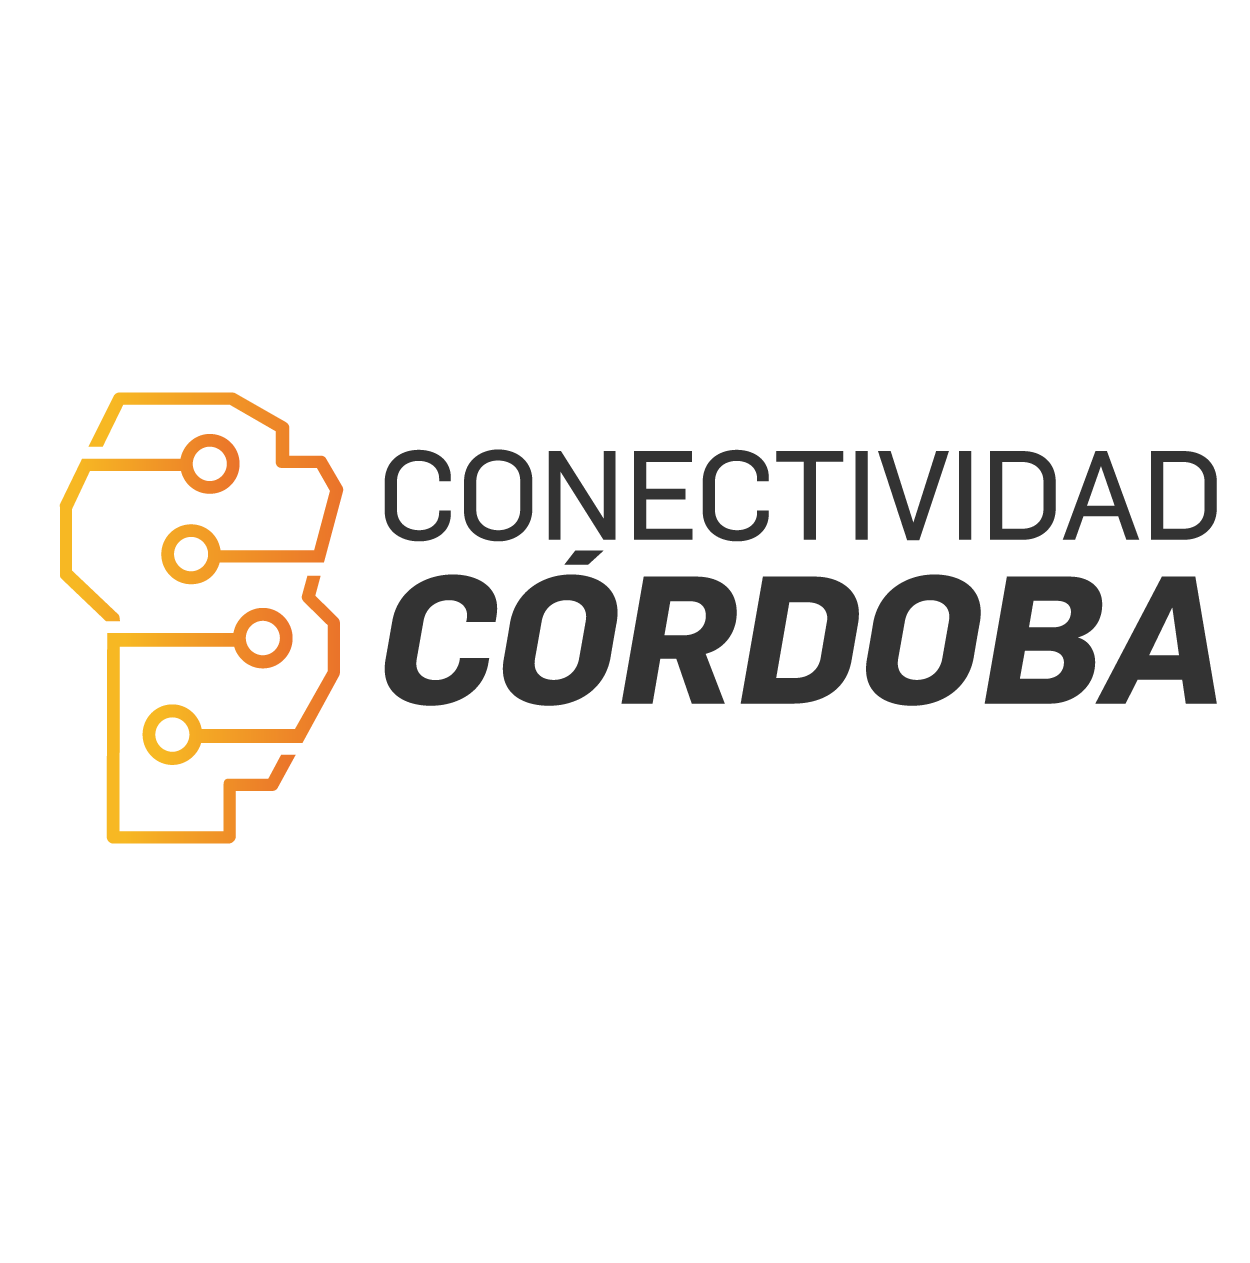 Conectividad Gobierno de Córdoba Argentina